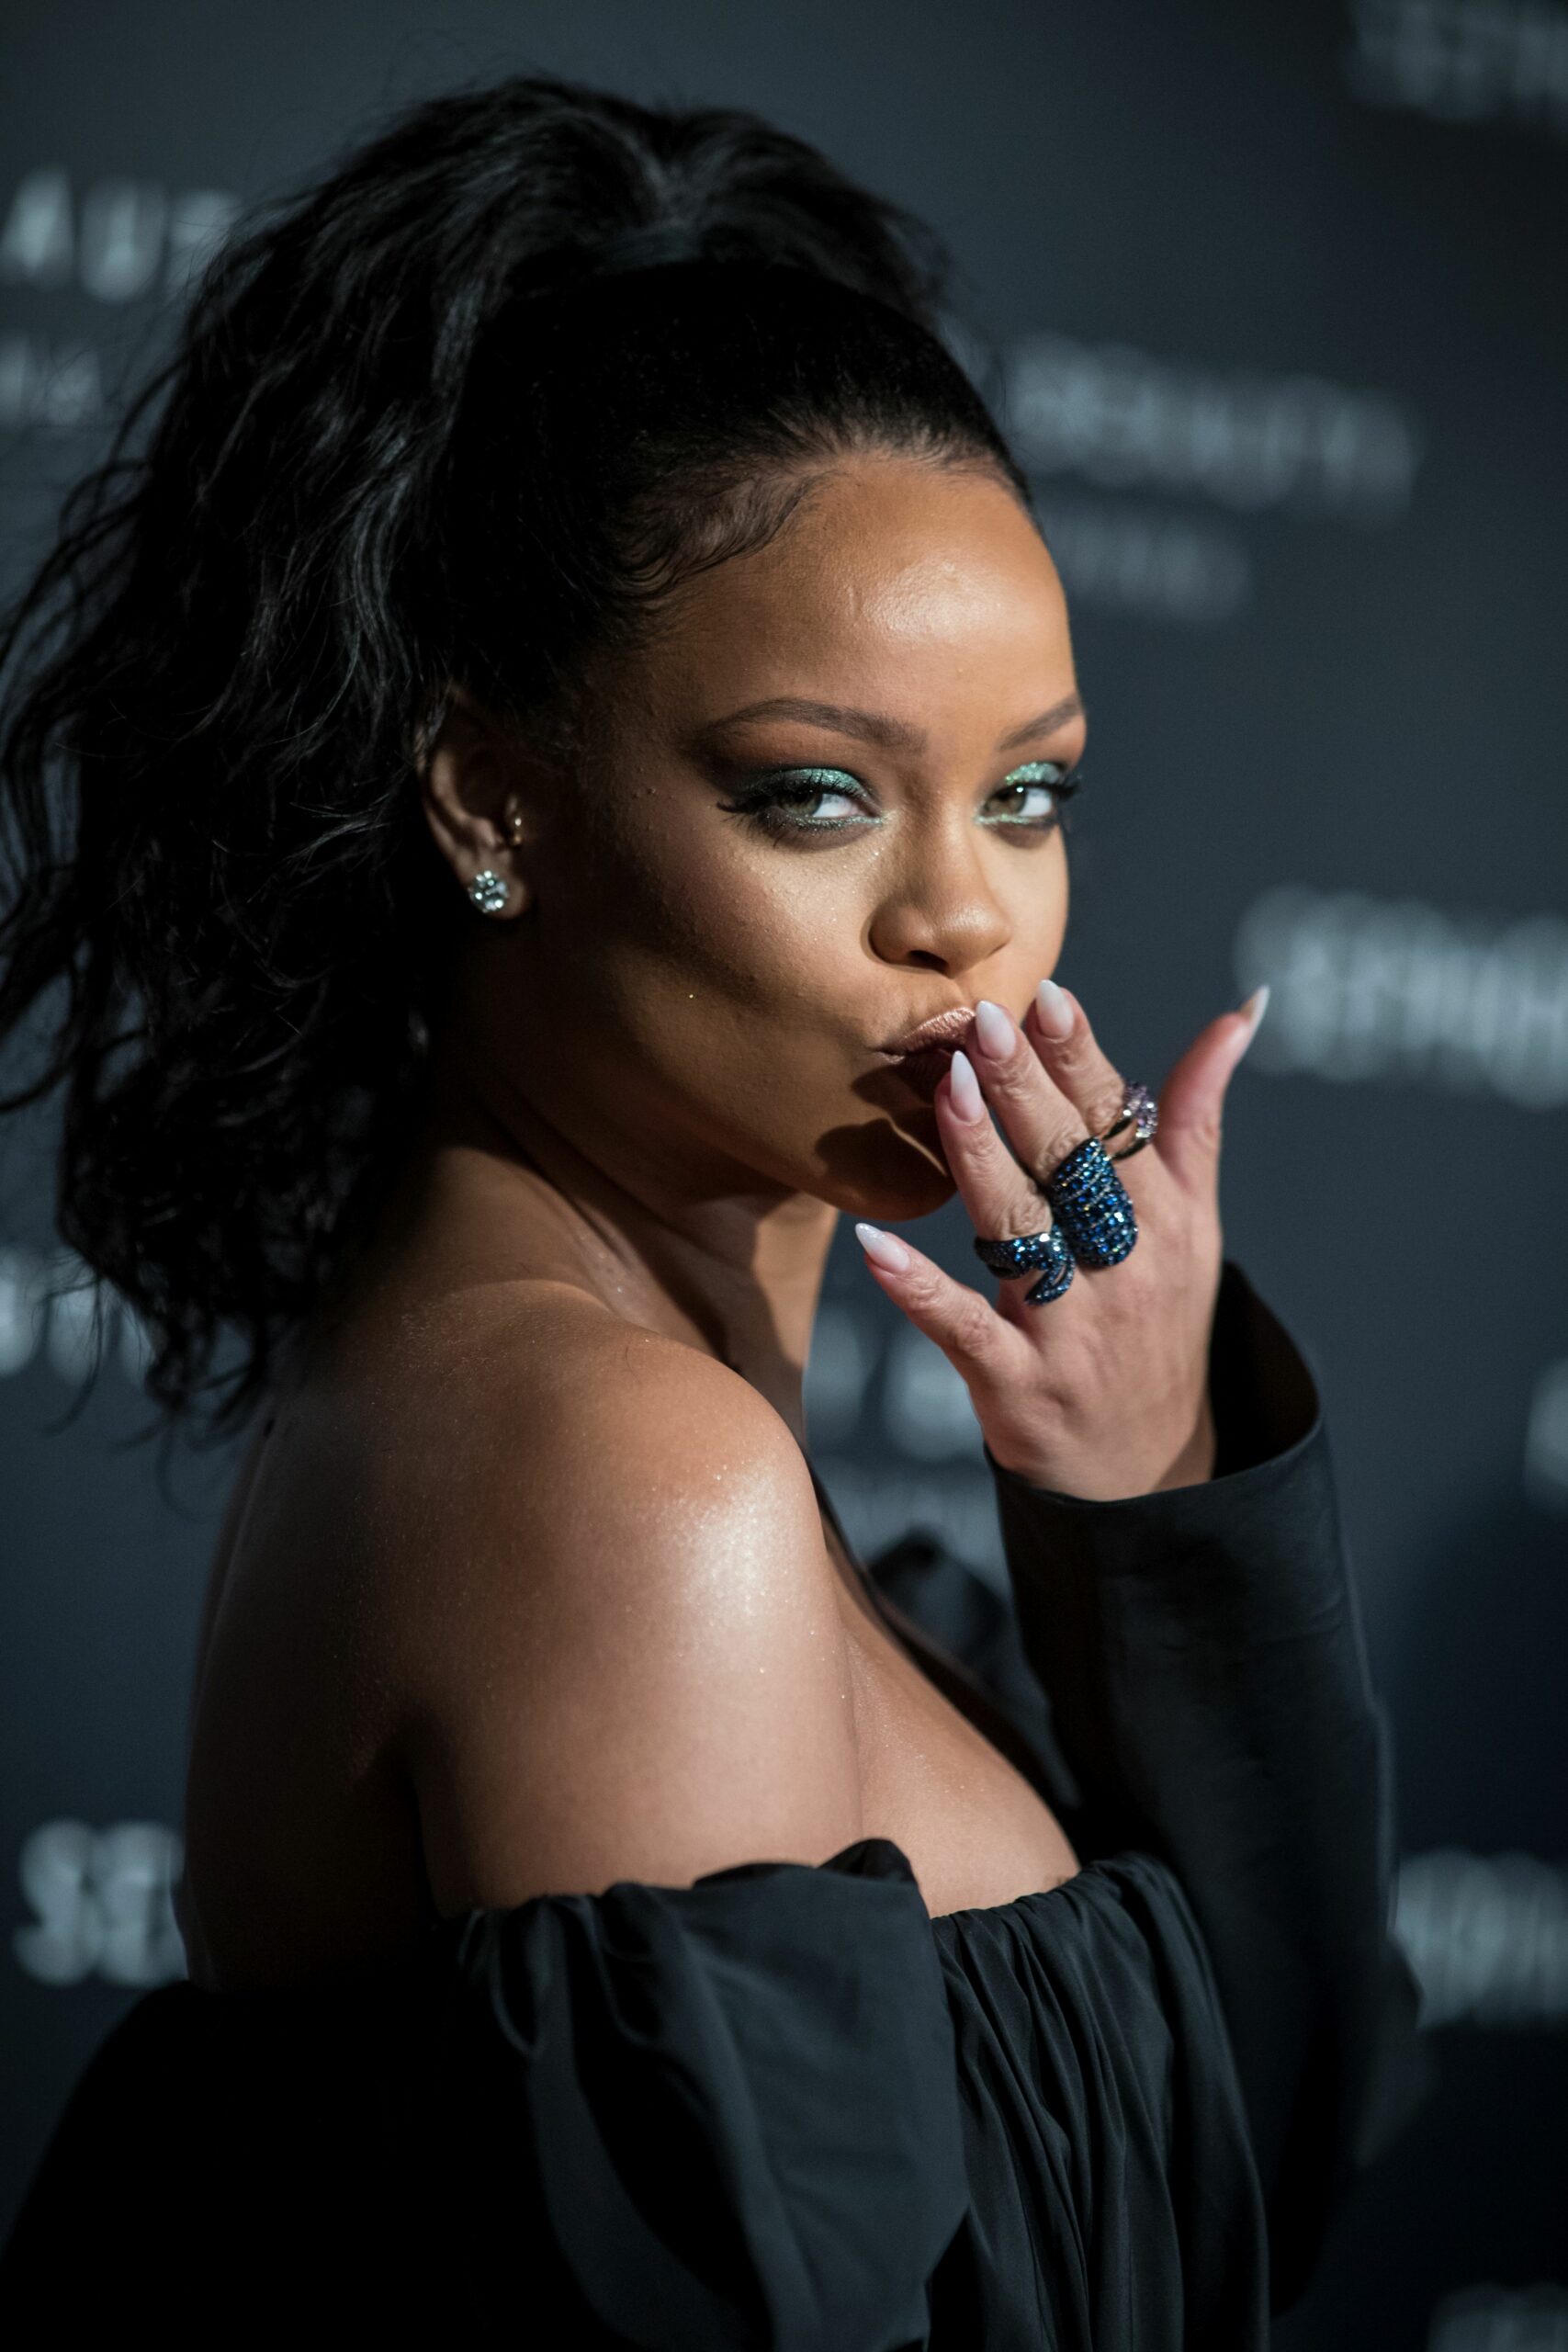 Nu e pentru cine se pregătește! 10 hituri pe care ar fi trebuit să le lanseze Rihanna, dar au ajuns la alți artiști